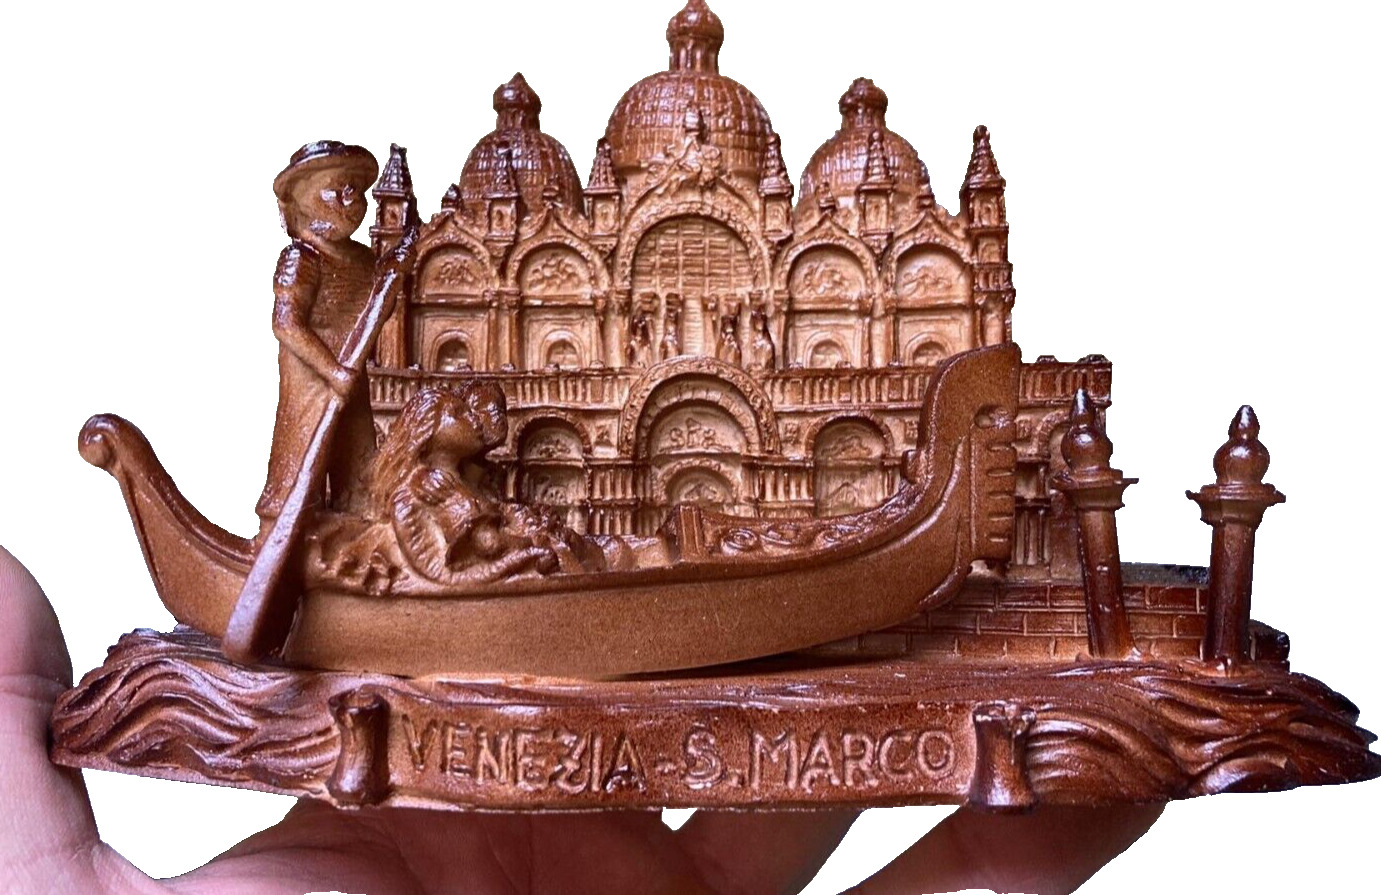 Venice, Italy San Marco Basilica Gondola Souvenir Sculpture, Made in Italy